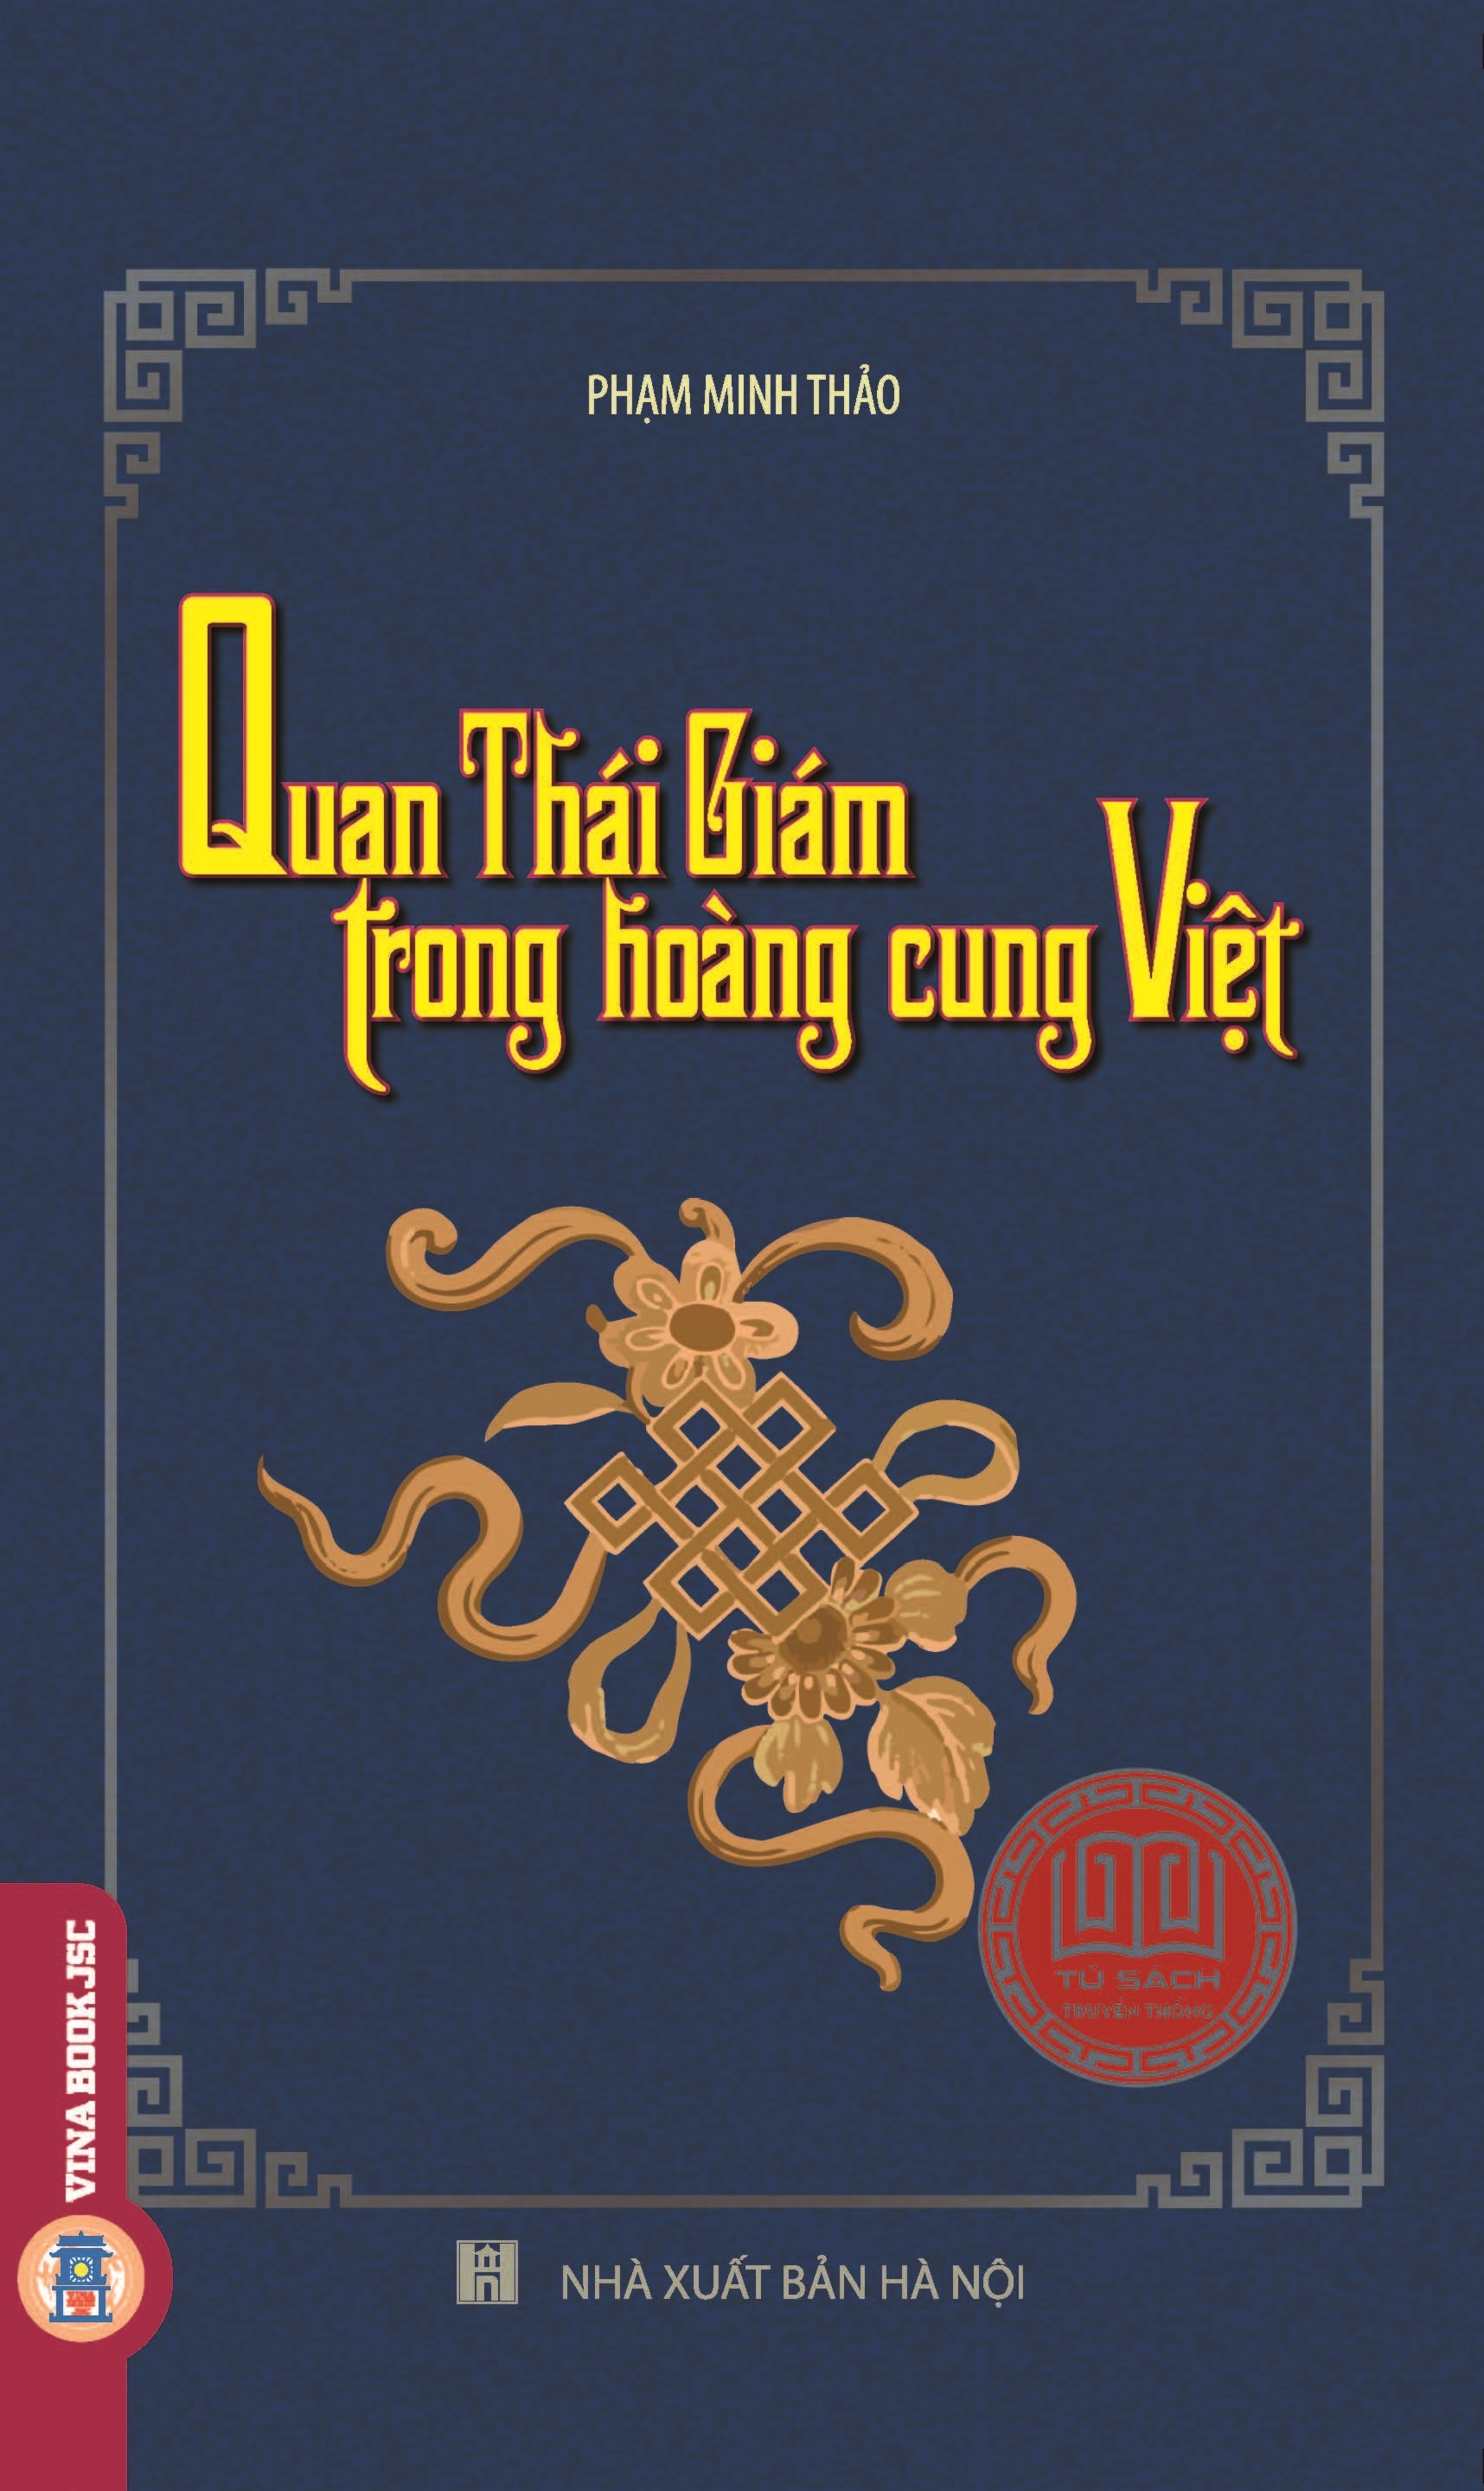 Tủ Sách Truyền Thống - Quan Thái Giám Trong Hoàng Cung Việt